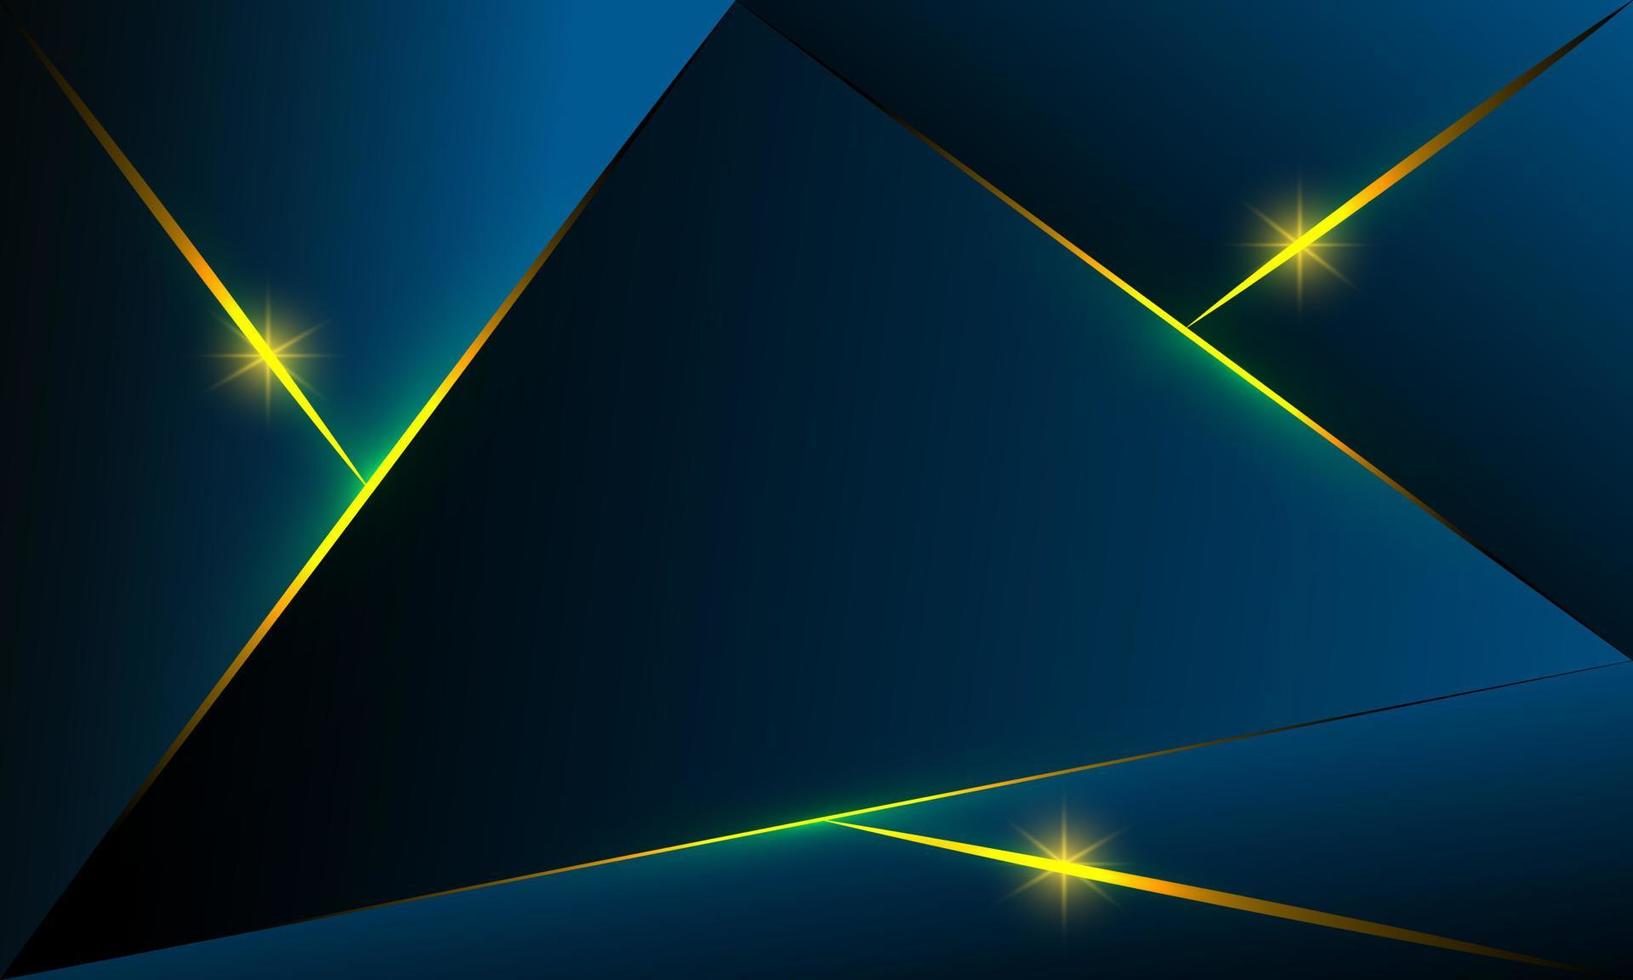 abstracte blauwe veelhoek driehoeken vorm patroon achtergrond met gouden lijn en verlichting effect luxe stijl. illustratie vector digitale technologie ontwerpconcept.